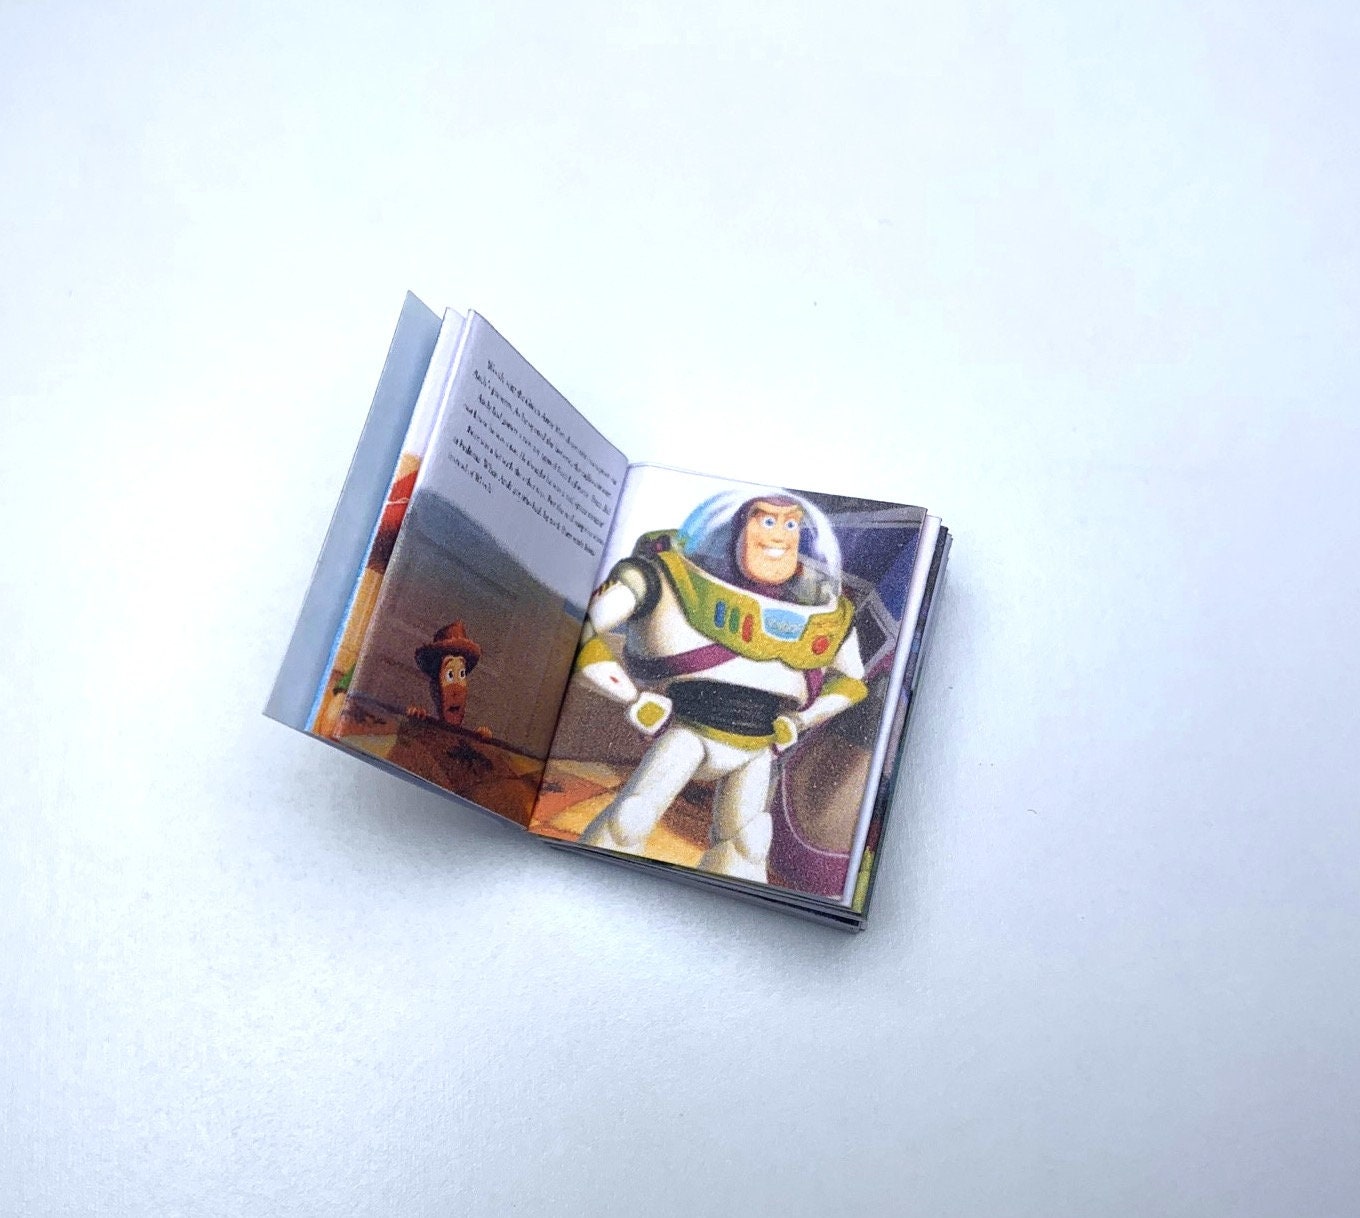 Puppenstube 1105# Miniatur Kinderbuch Puppenhaus Struwwelliese M1zu12 